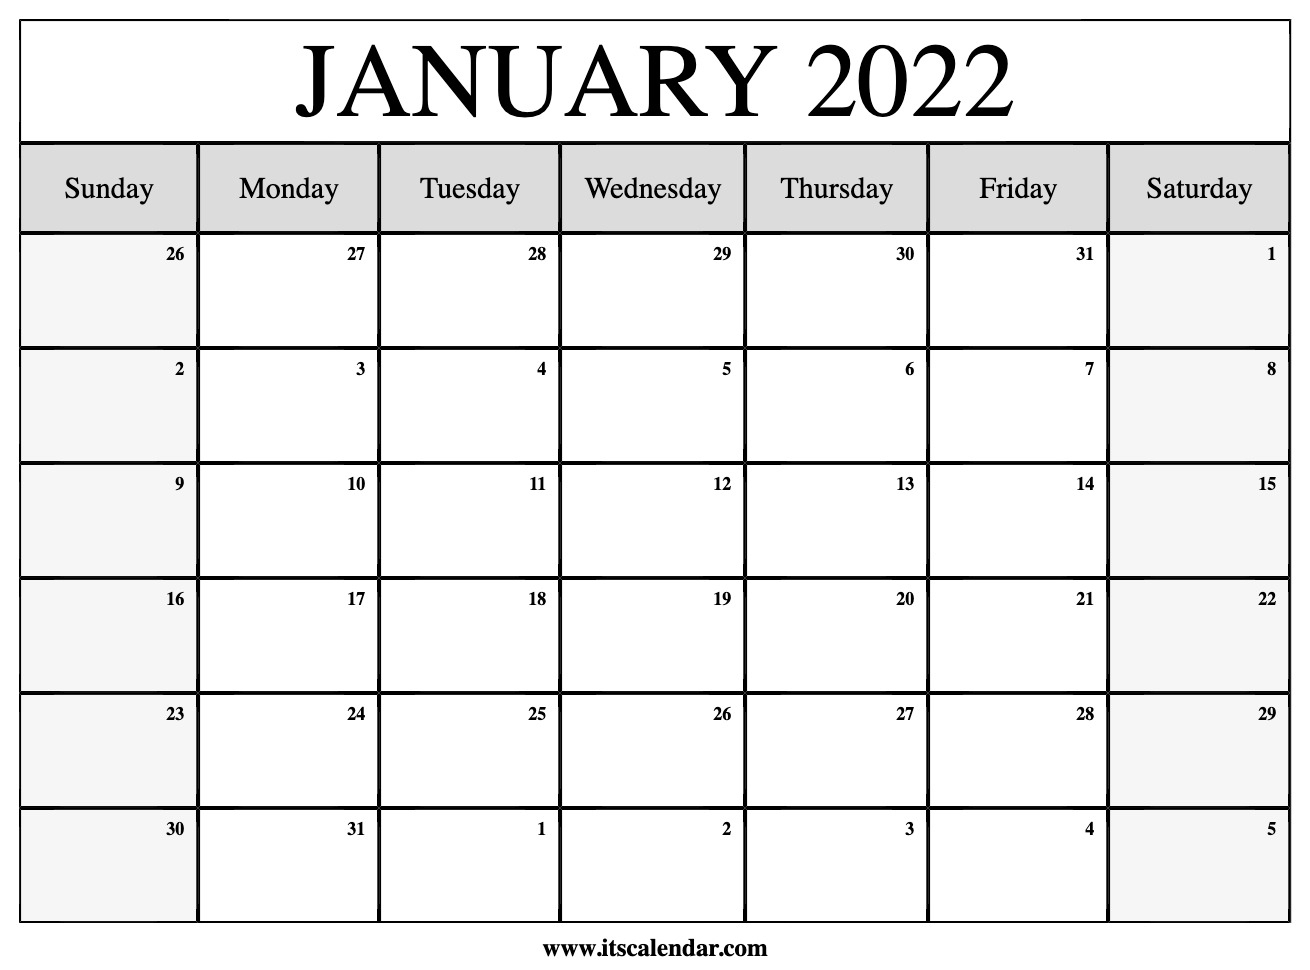 Catch January 2022 Us Calendar